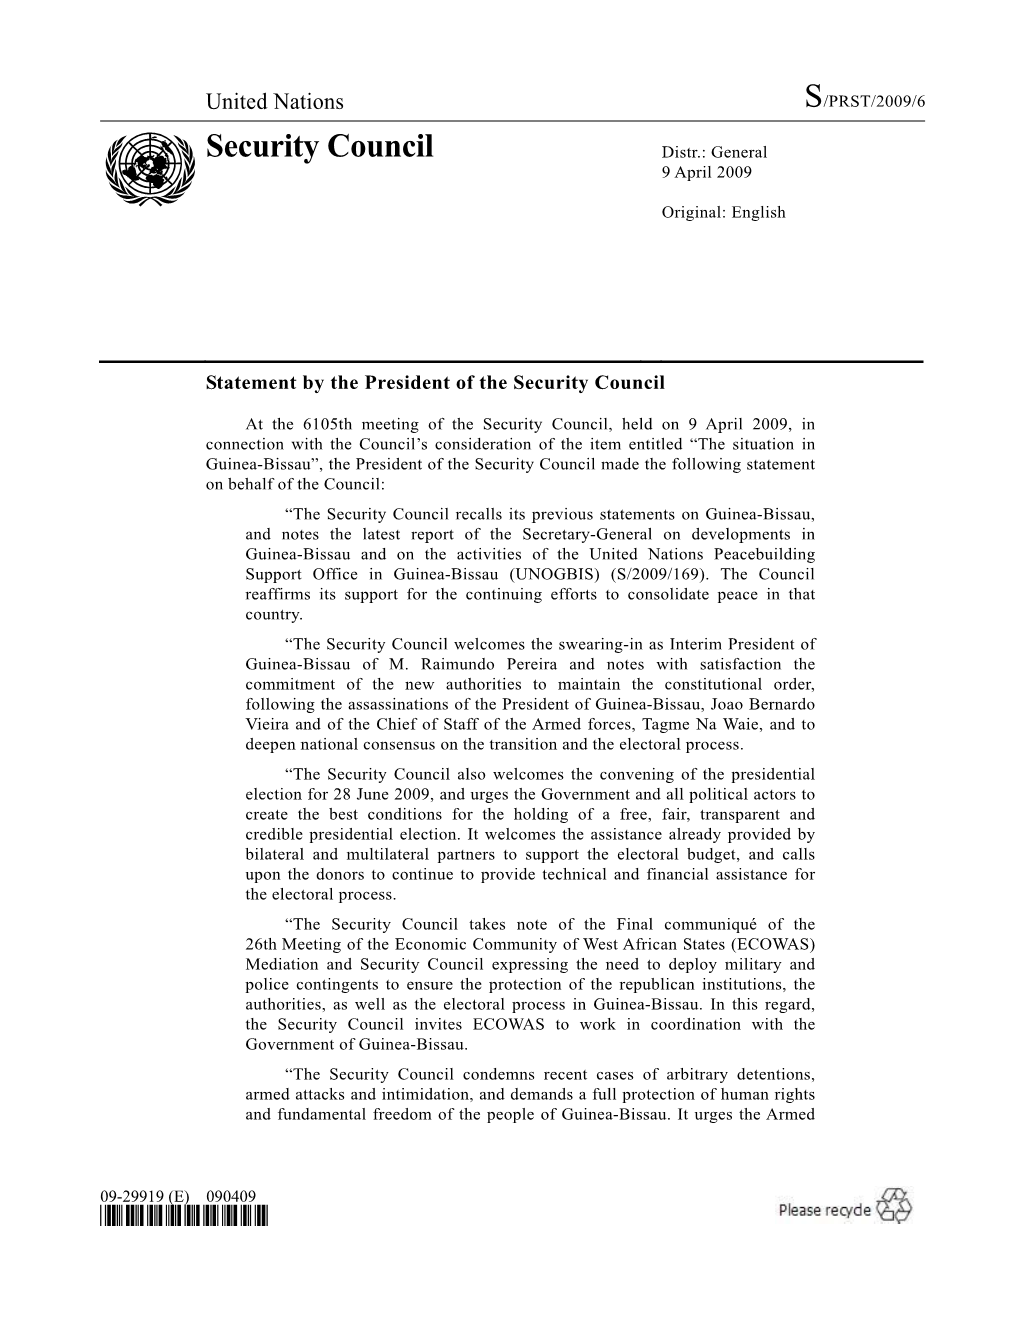 Security Council Distr.: General 9 April 2009